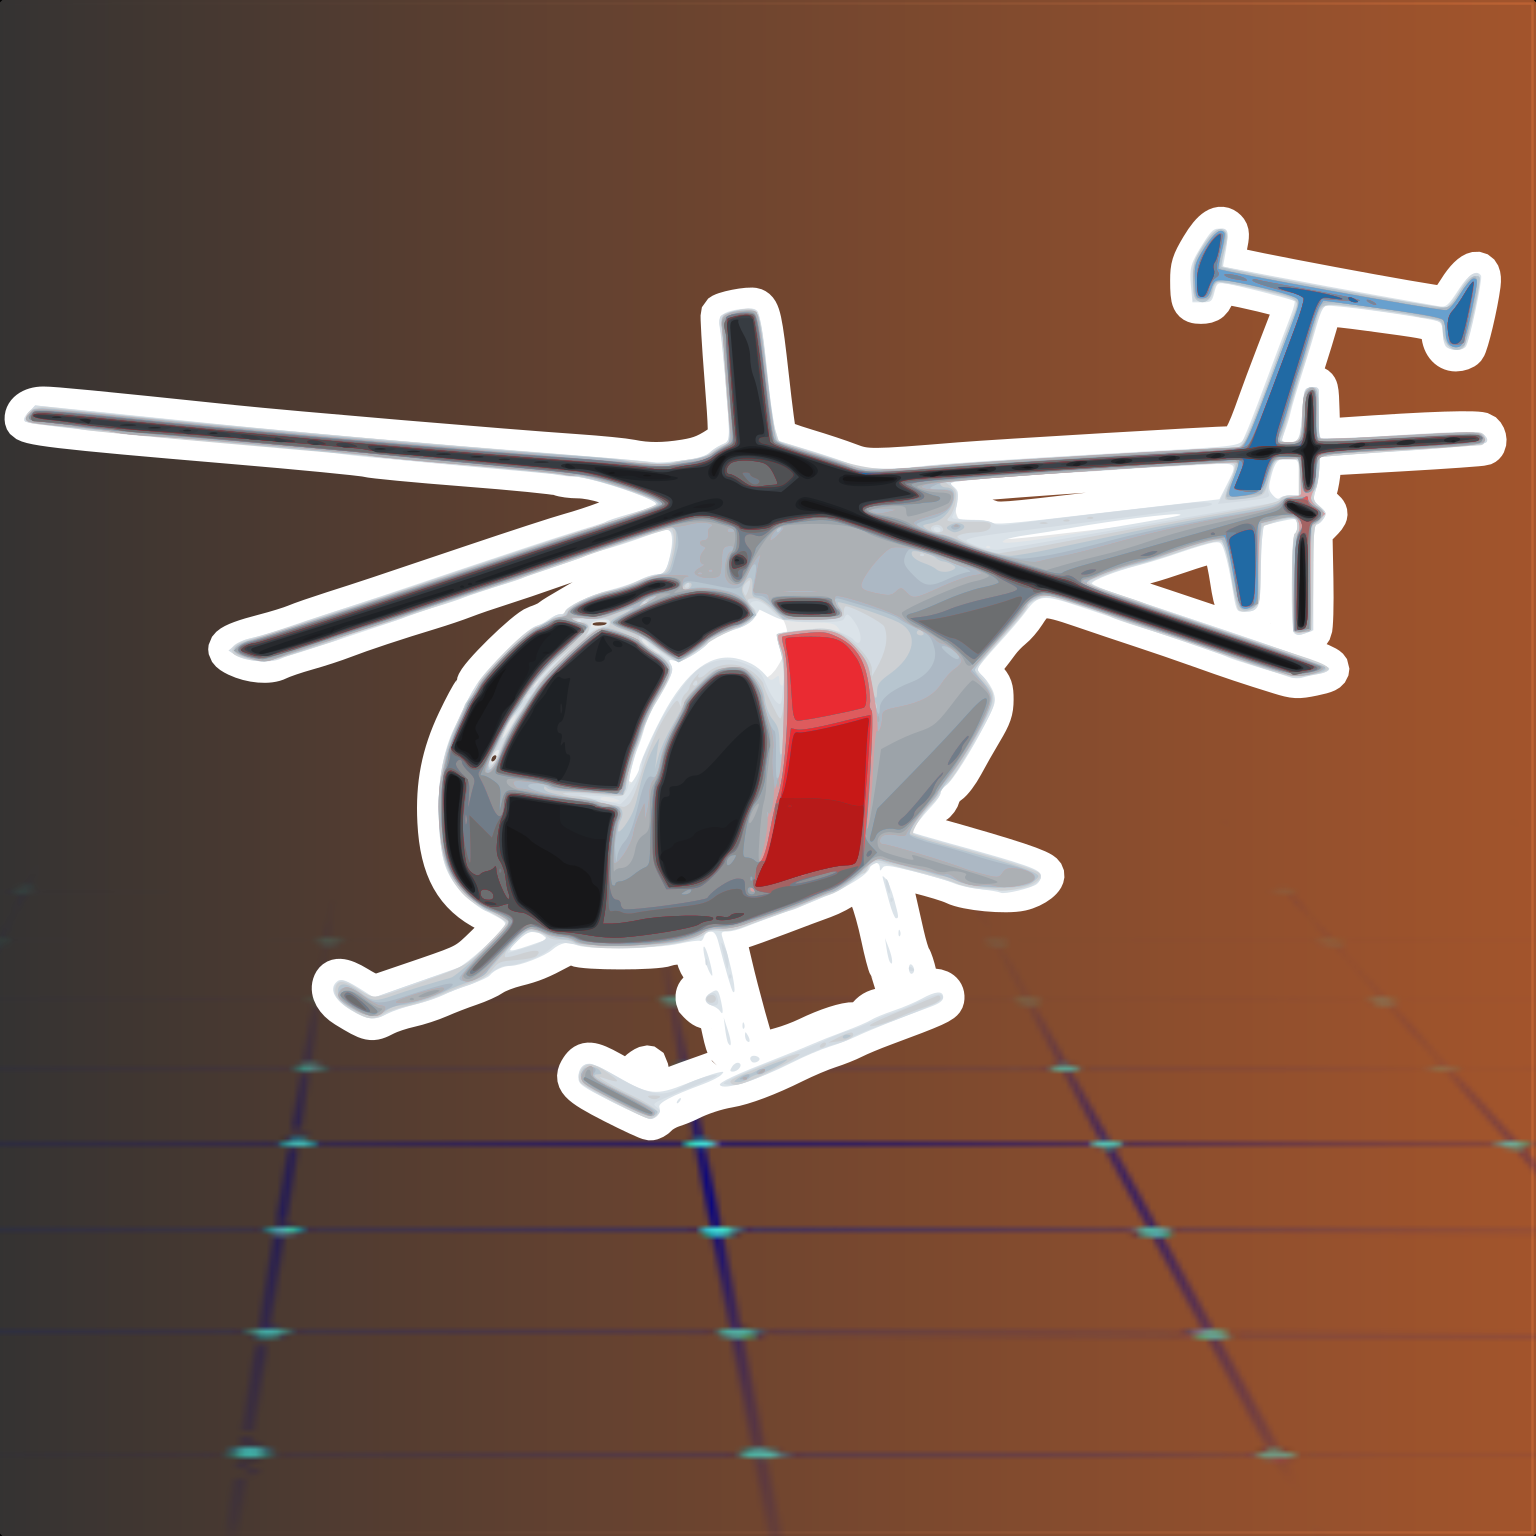 Navigation bar avatar